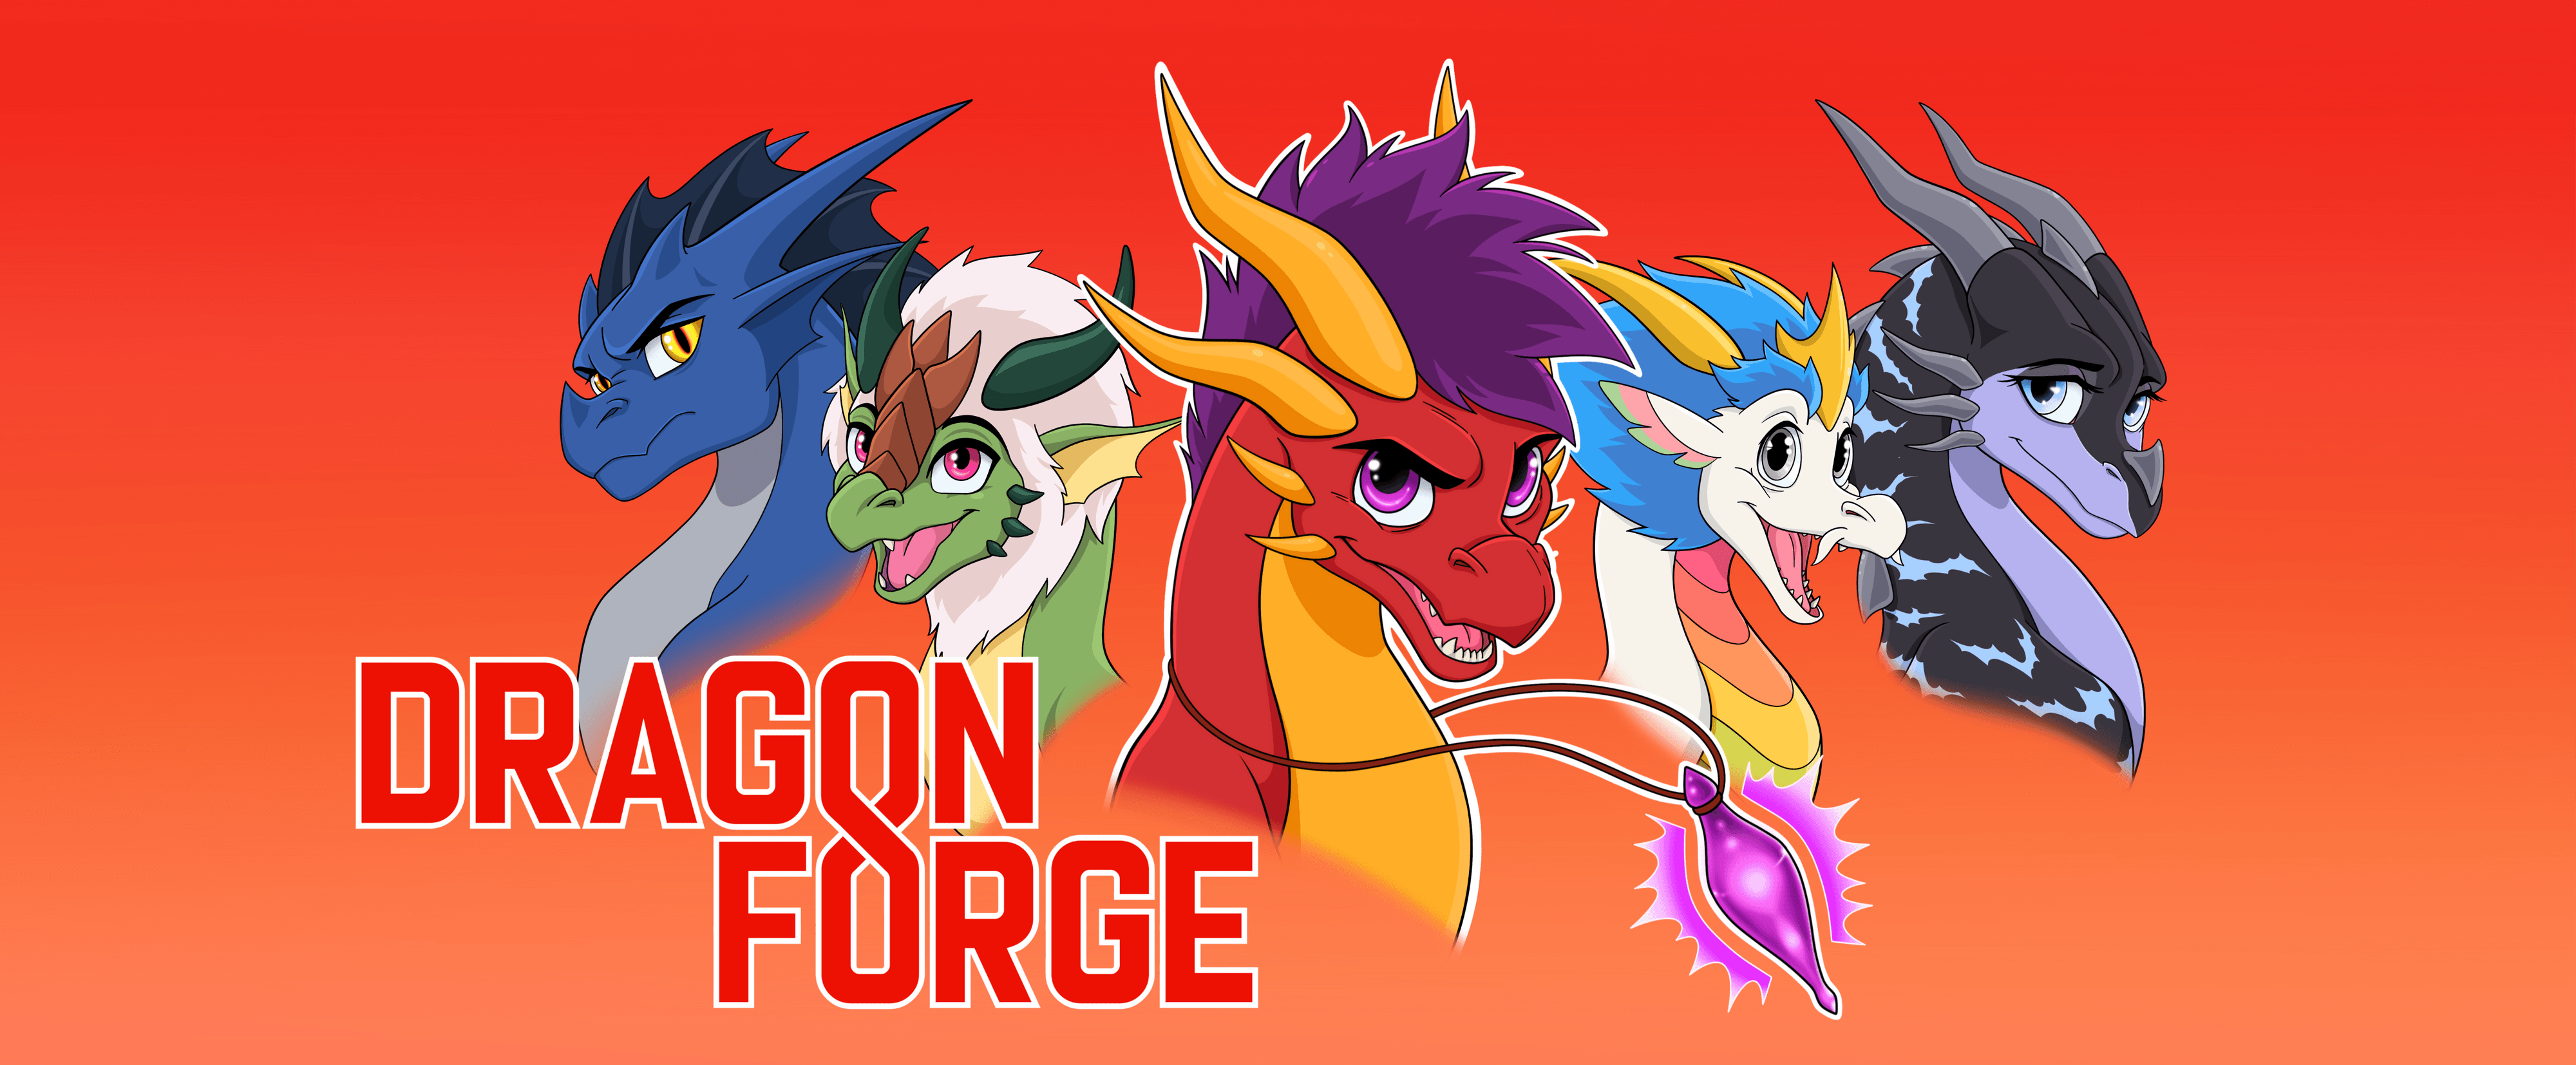 DragonForge bannière